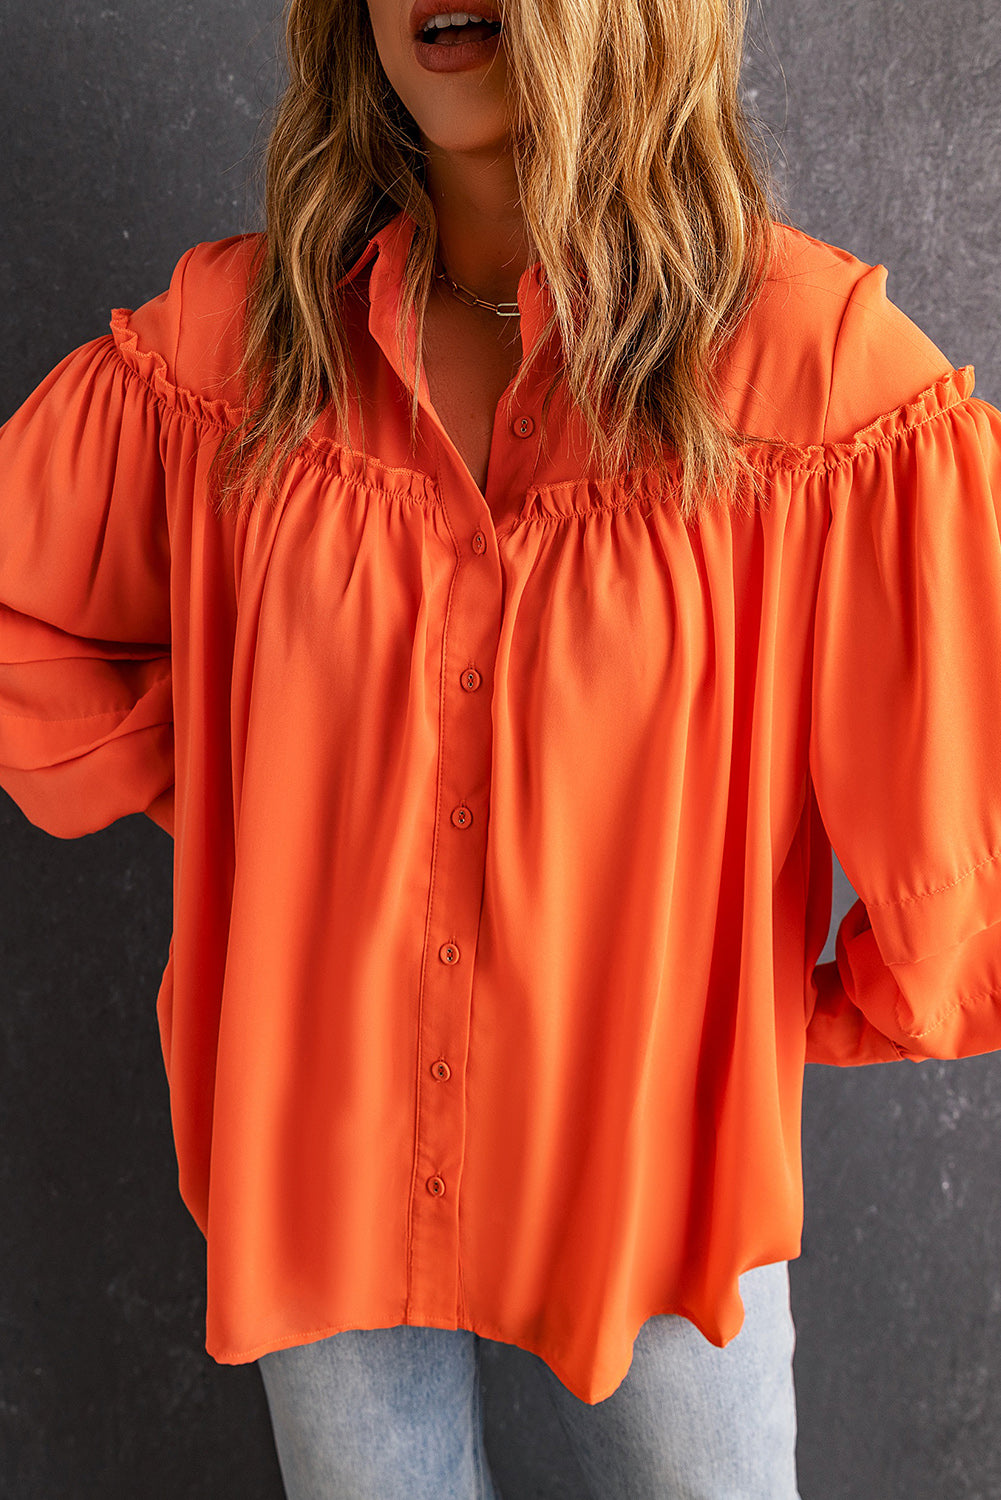 Oranžna srajca z napihnjenimi rokavi z volančki